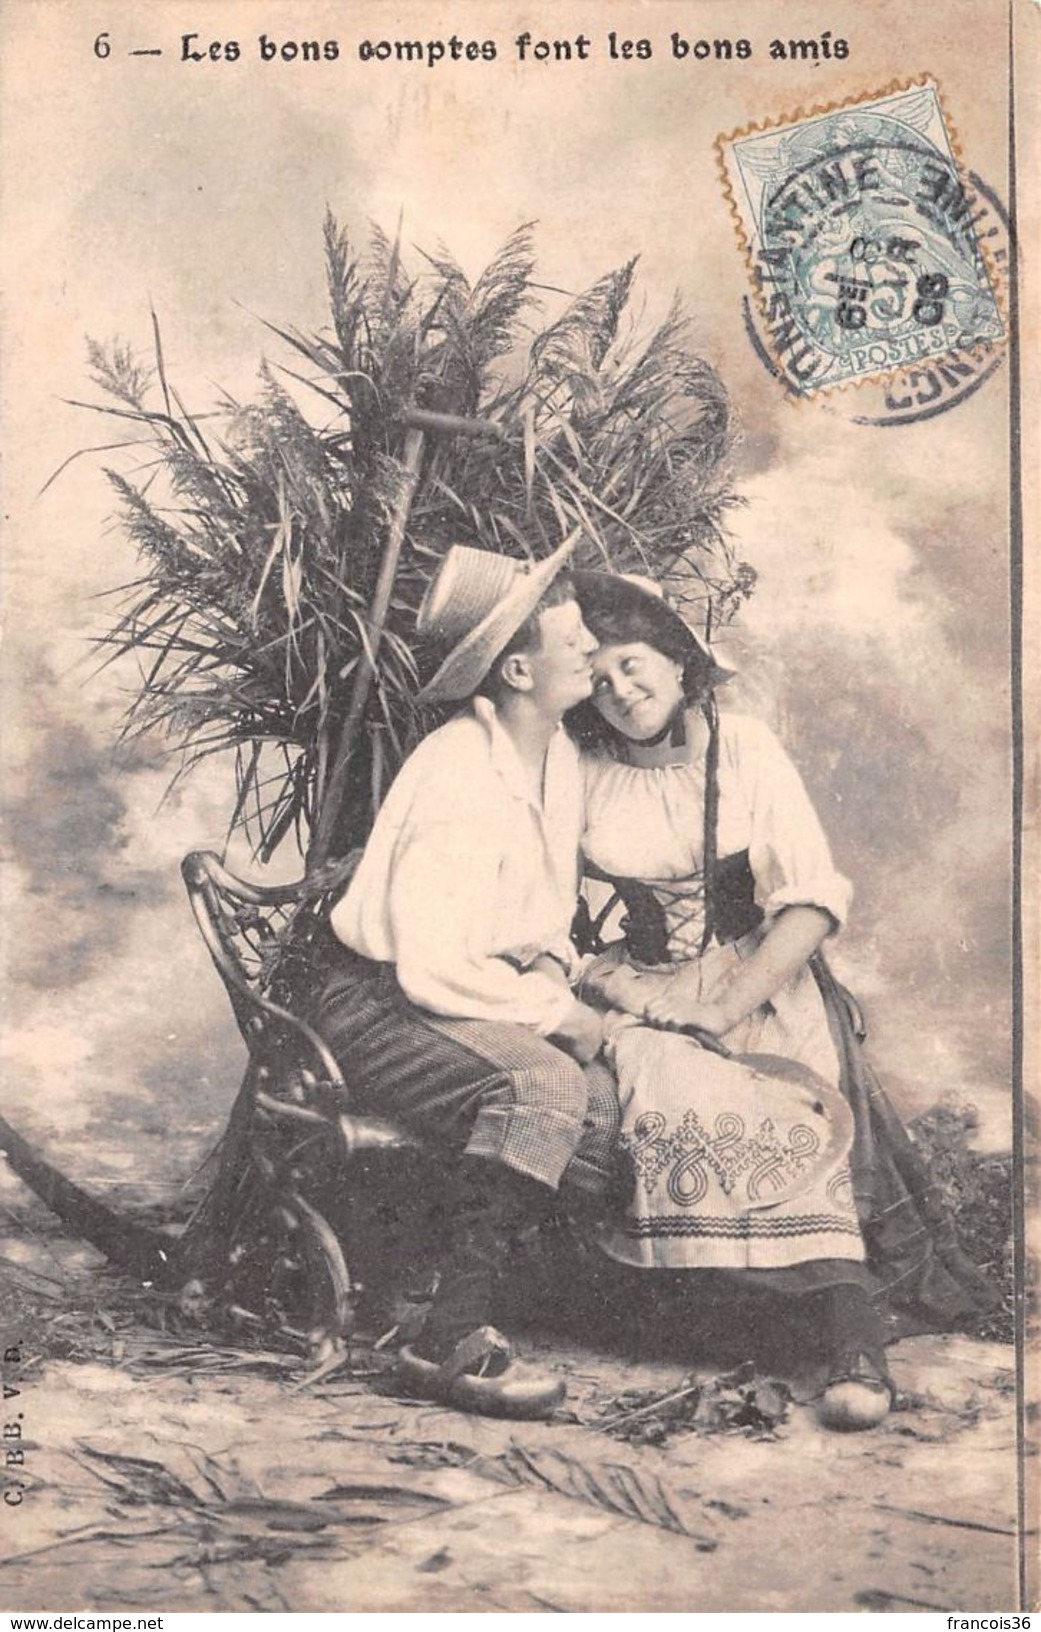 Lot de 90 CPA Fantaisies 1900s 1950s : Femmes enfants couples illustrations fleurs etc